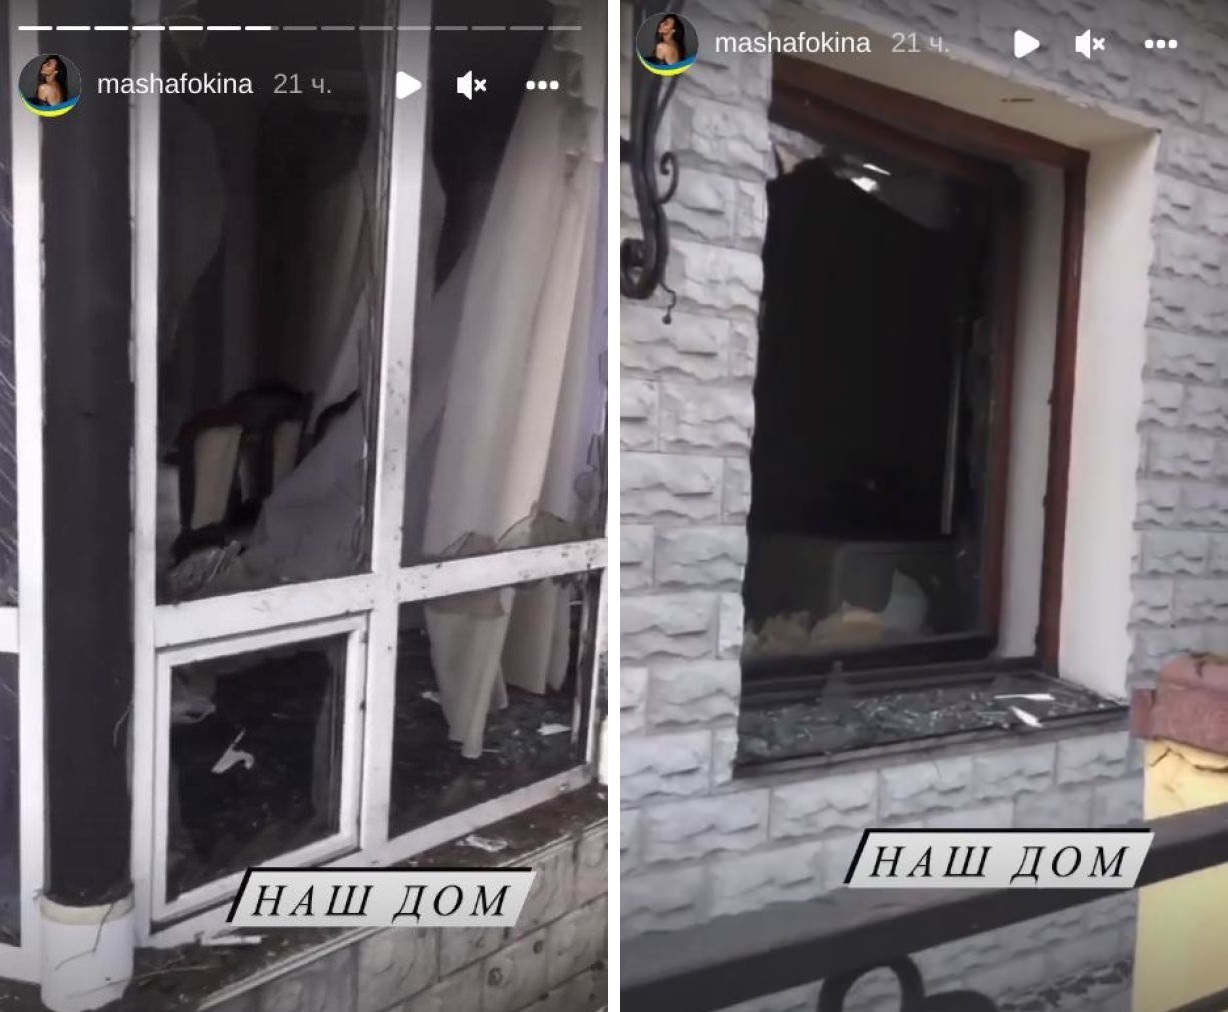 Гвоздєва, Кондратюк, Харчишин: які українські зірки втратили свої будинки від бомбардувань РФ